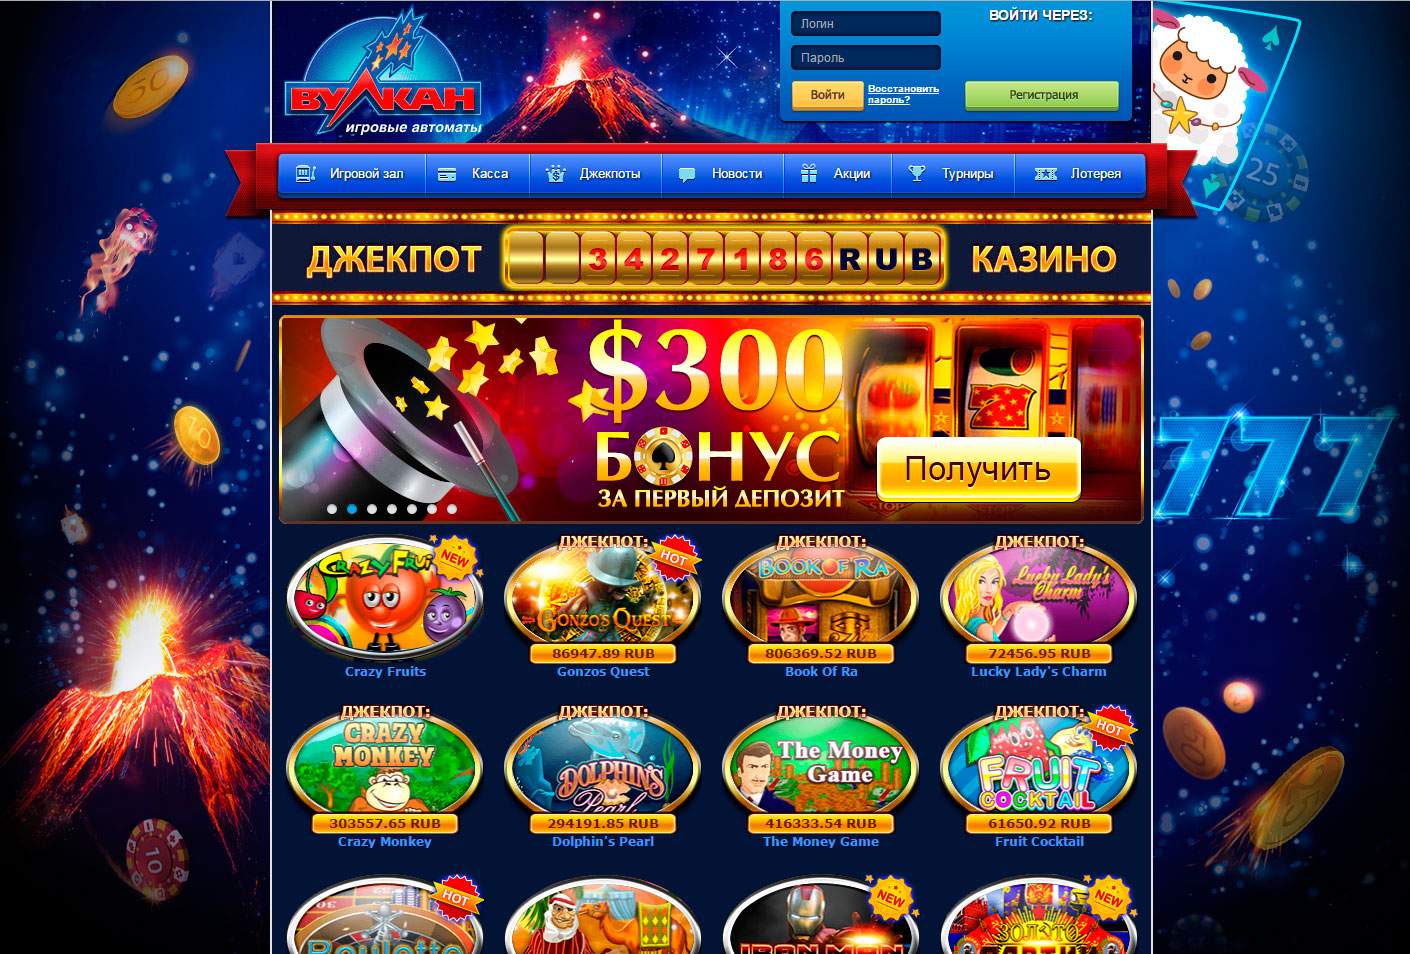 Вулкан автоматы казино 1win как использовать бонусы promokod bk bonus